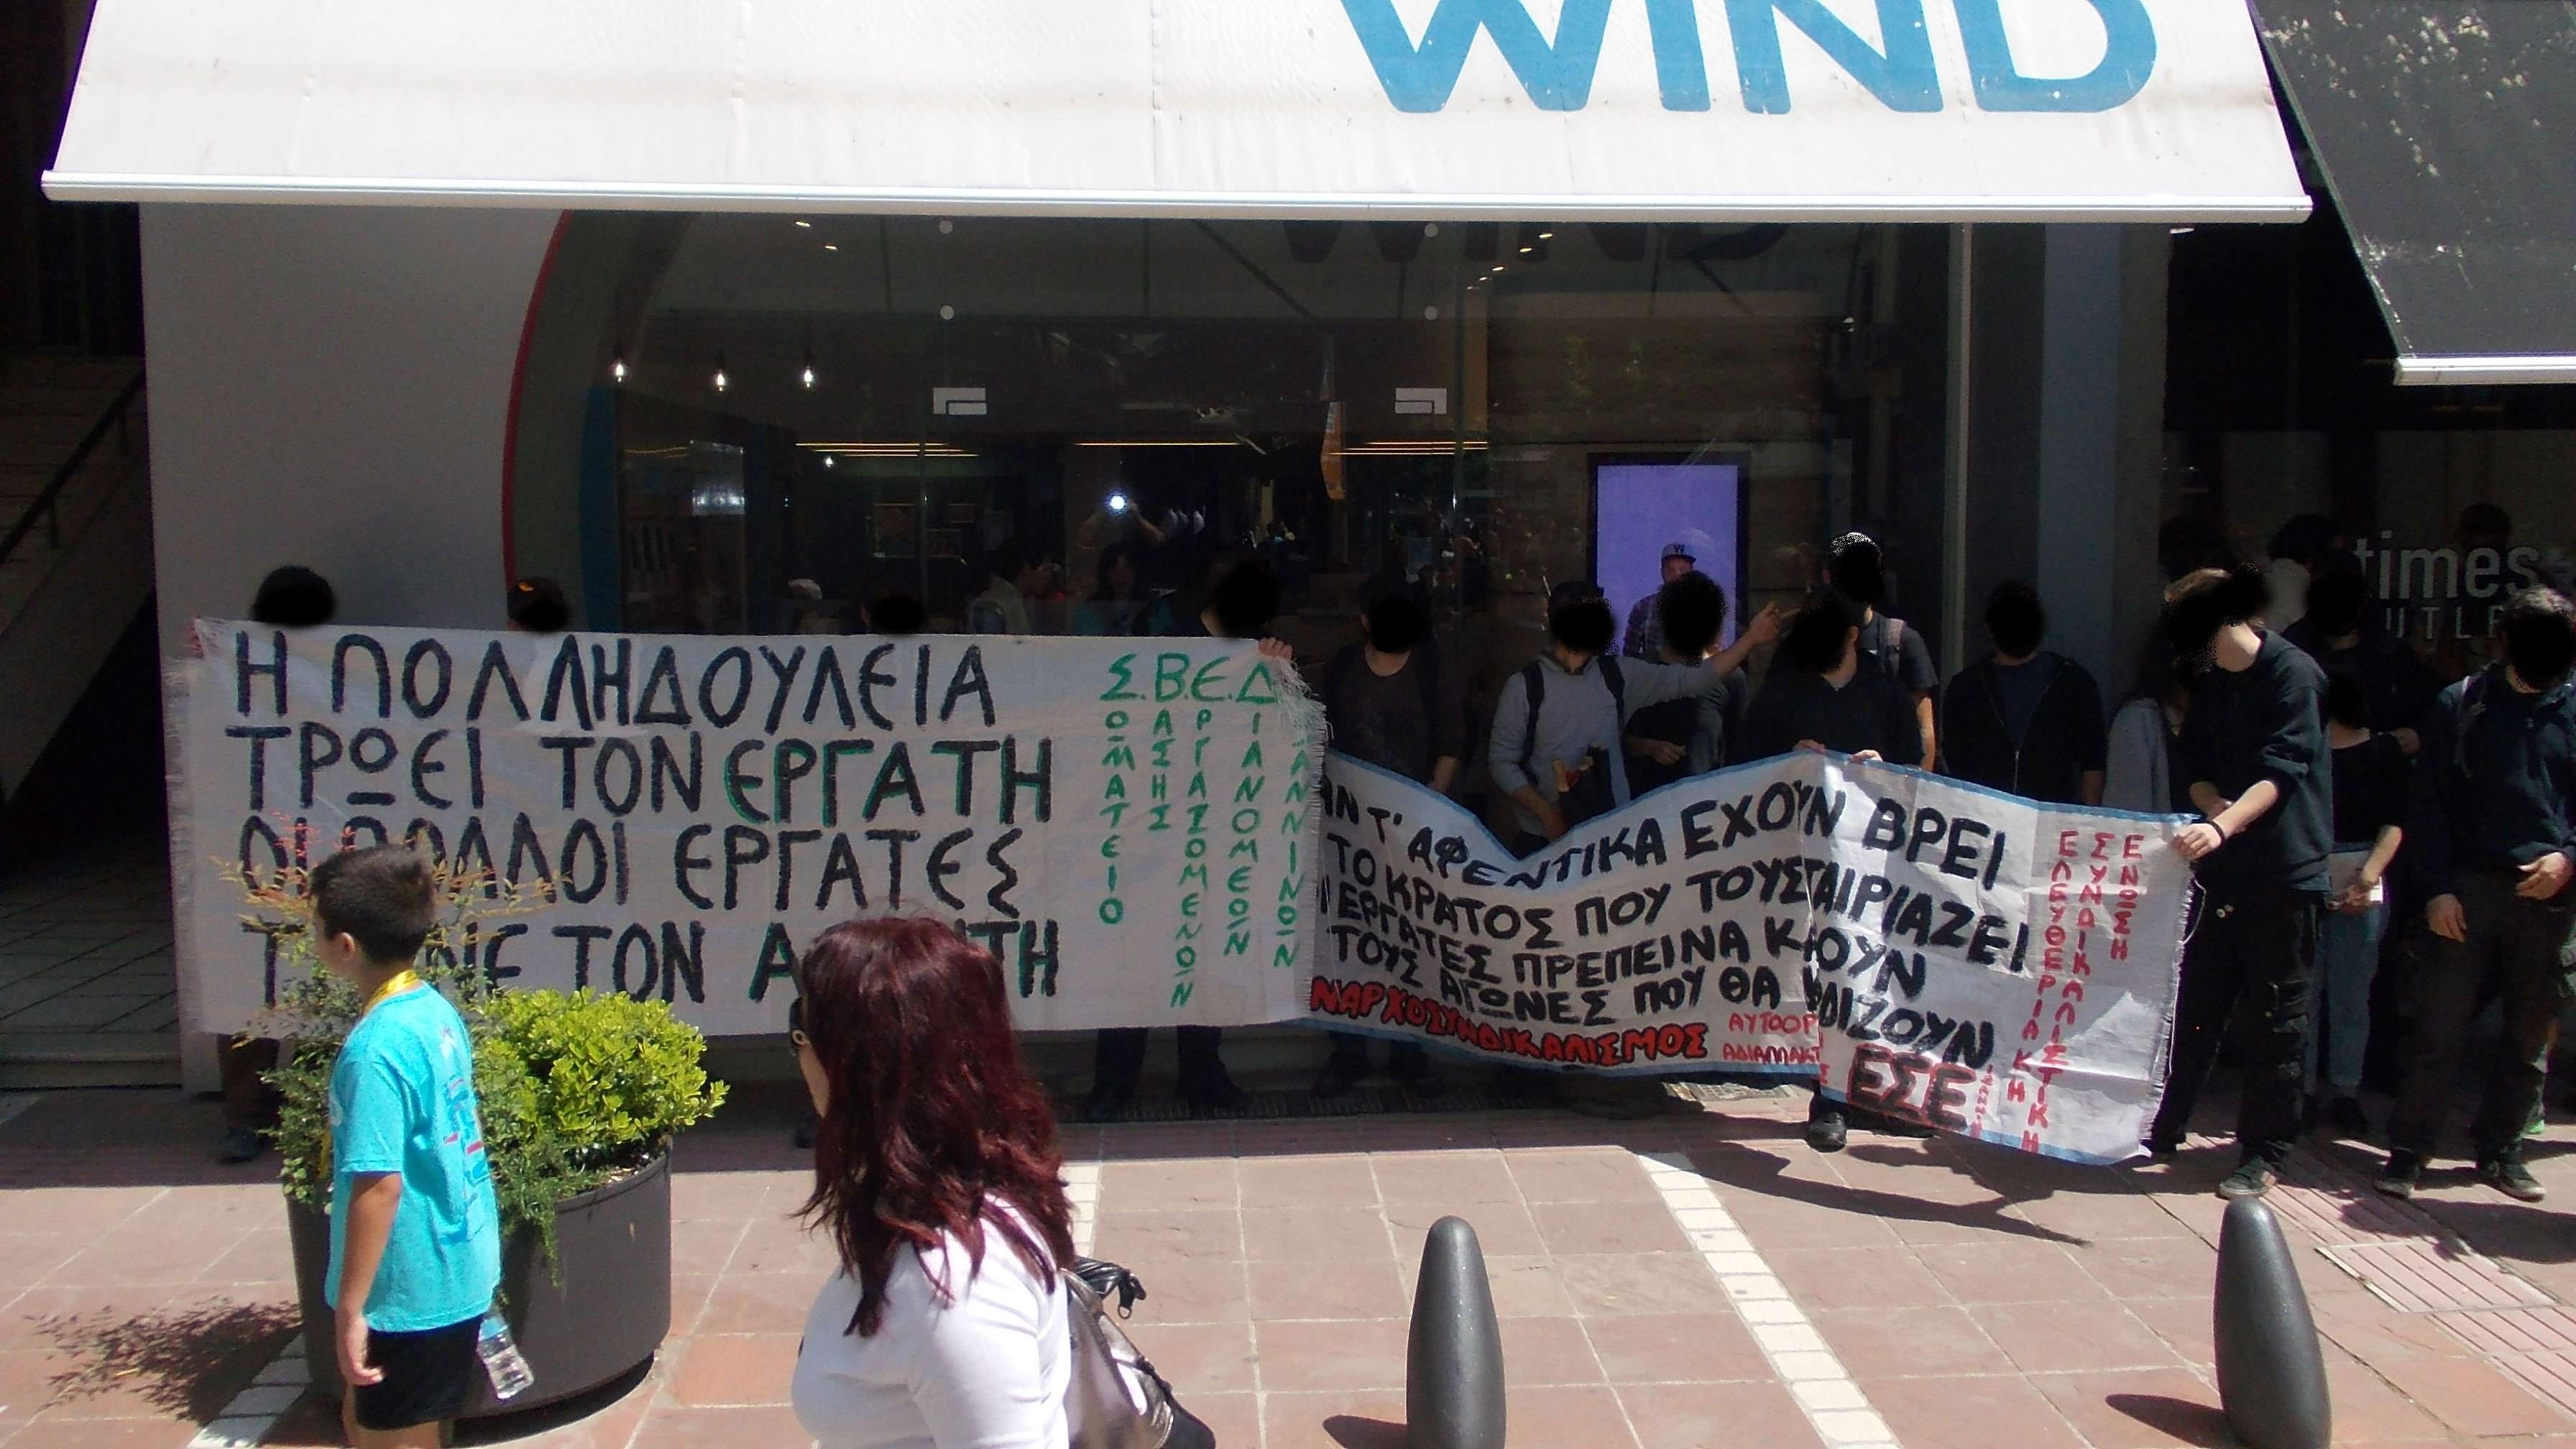 ΕΣΕ: Ενημέρωση από τη διαδήλωση στα Ιωάννινα (08/05)